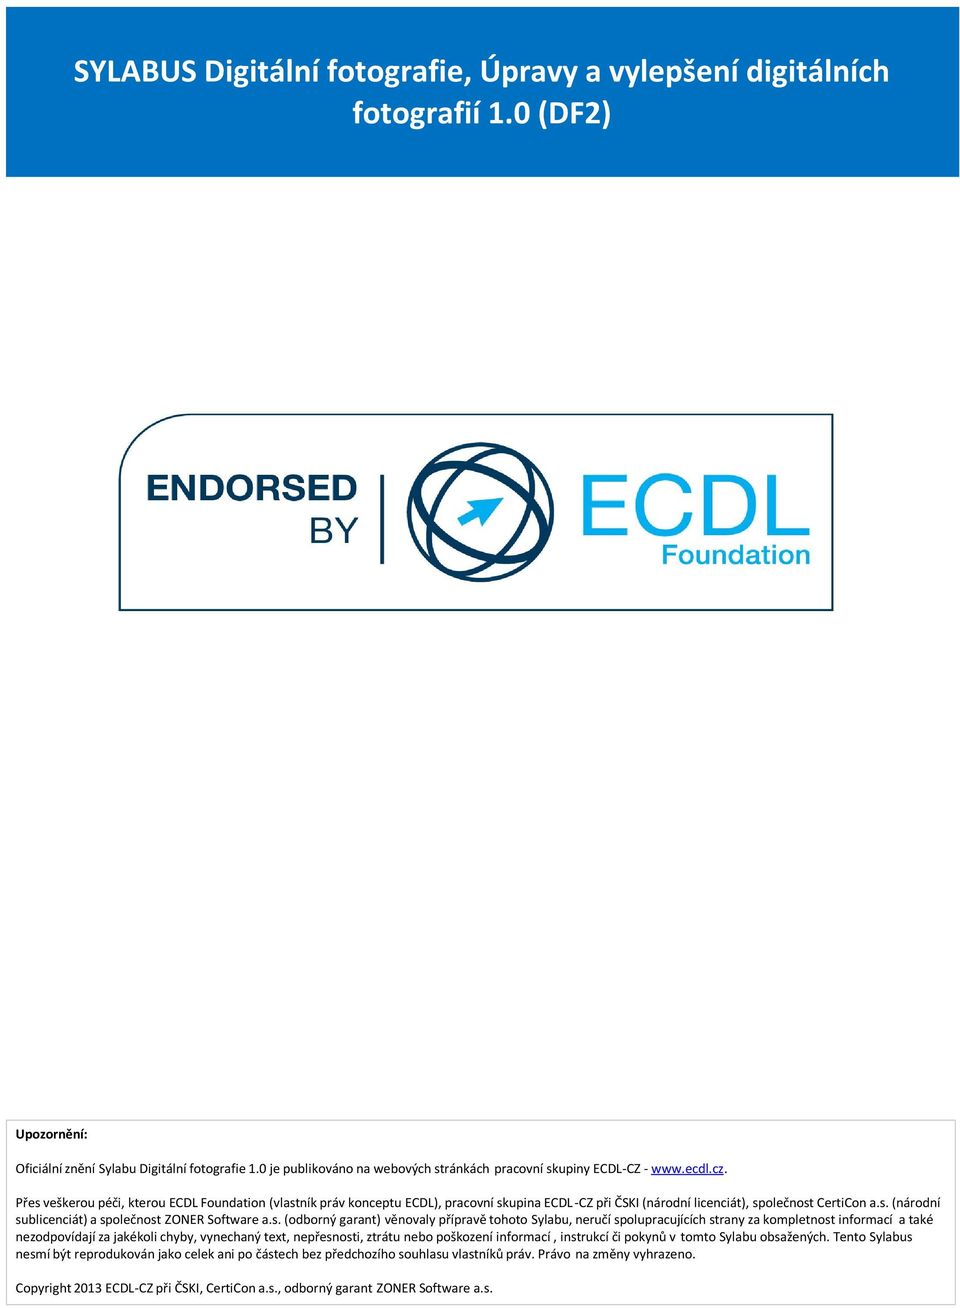 Přes veškerou péči, kterou ECDL Foundation (vlastník práv konceptu ECDL), pracovní skupina ECDL-CZ při ČSKI (národní licenciát), společnost CertiCon a.s. (národní sublicenciát) a společnost ZONER Software a.